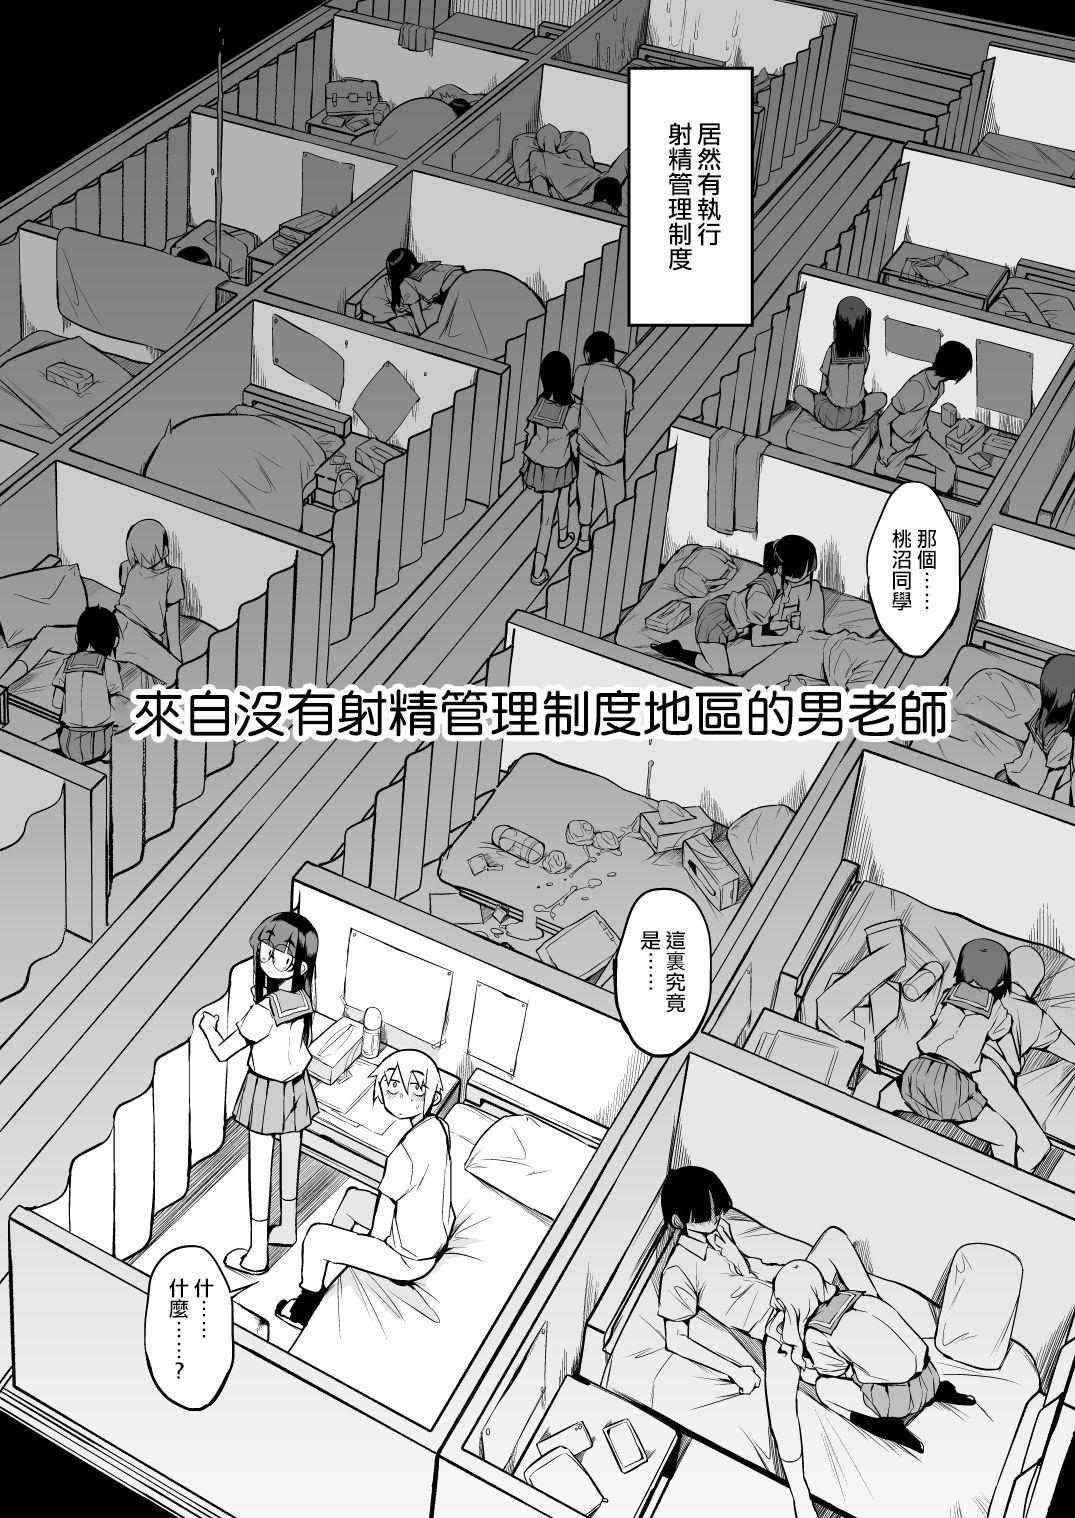 Relax Shasei Kanri Seido no Nai Ken kara Kita Otoko no Sensei 丨來自沒有射精管理制度地區的男老師 - Original Holes - Page 6